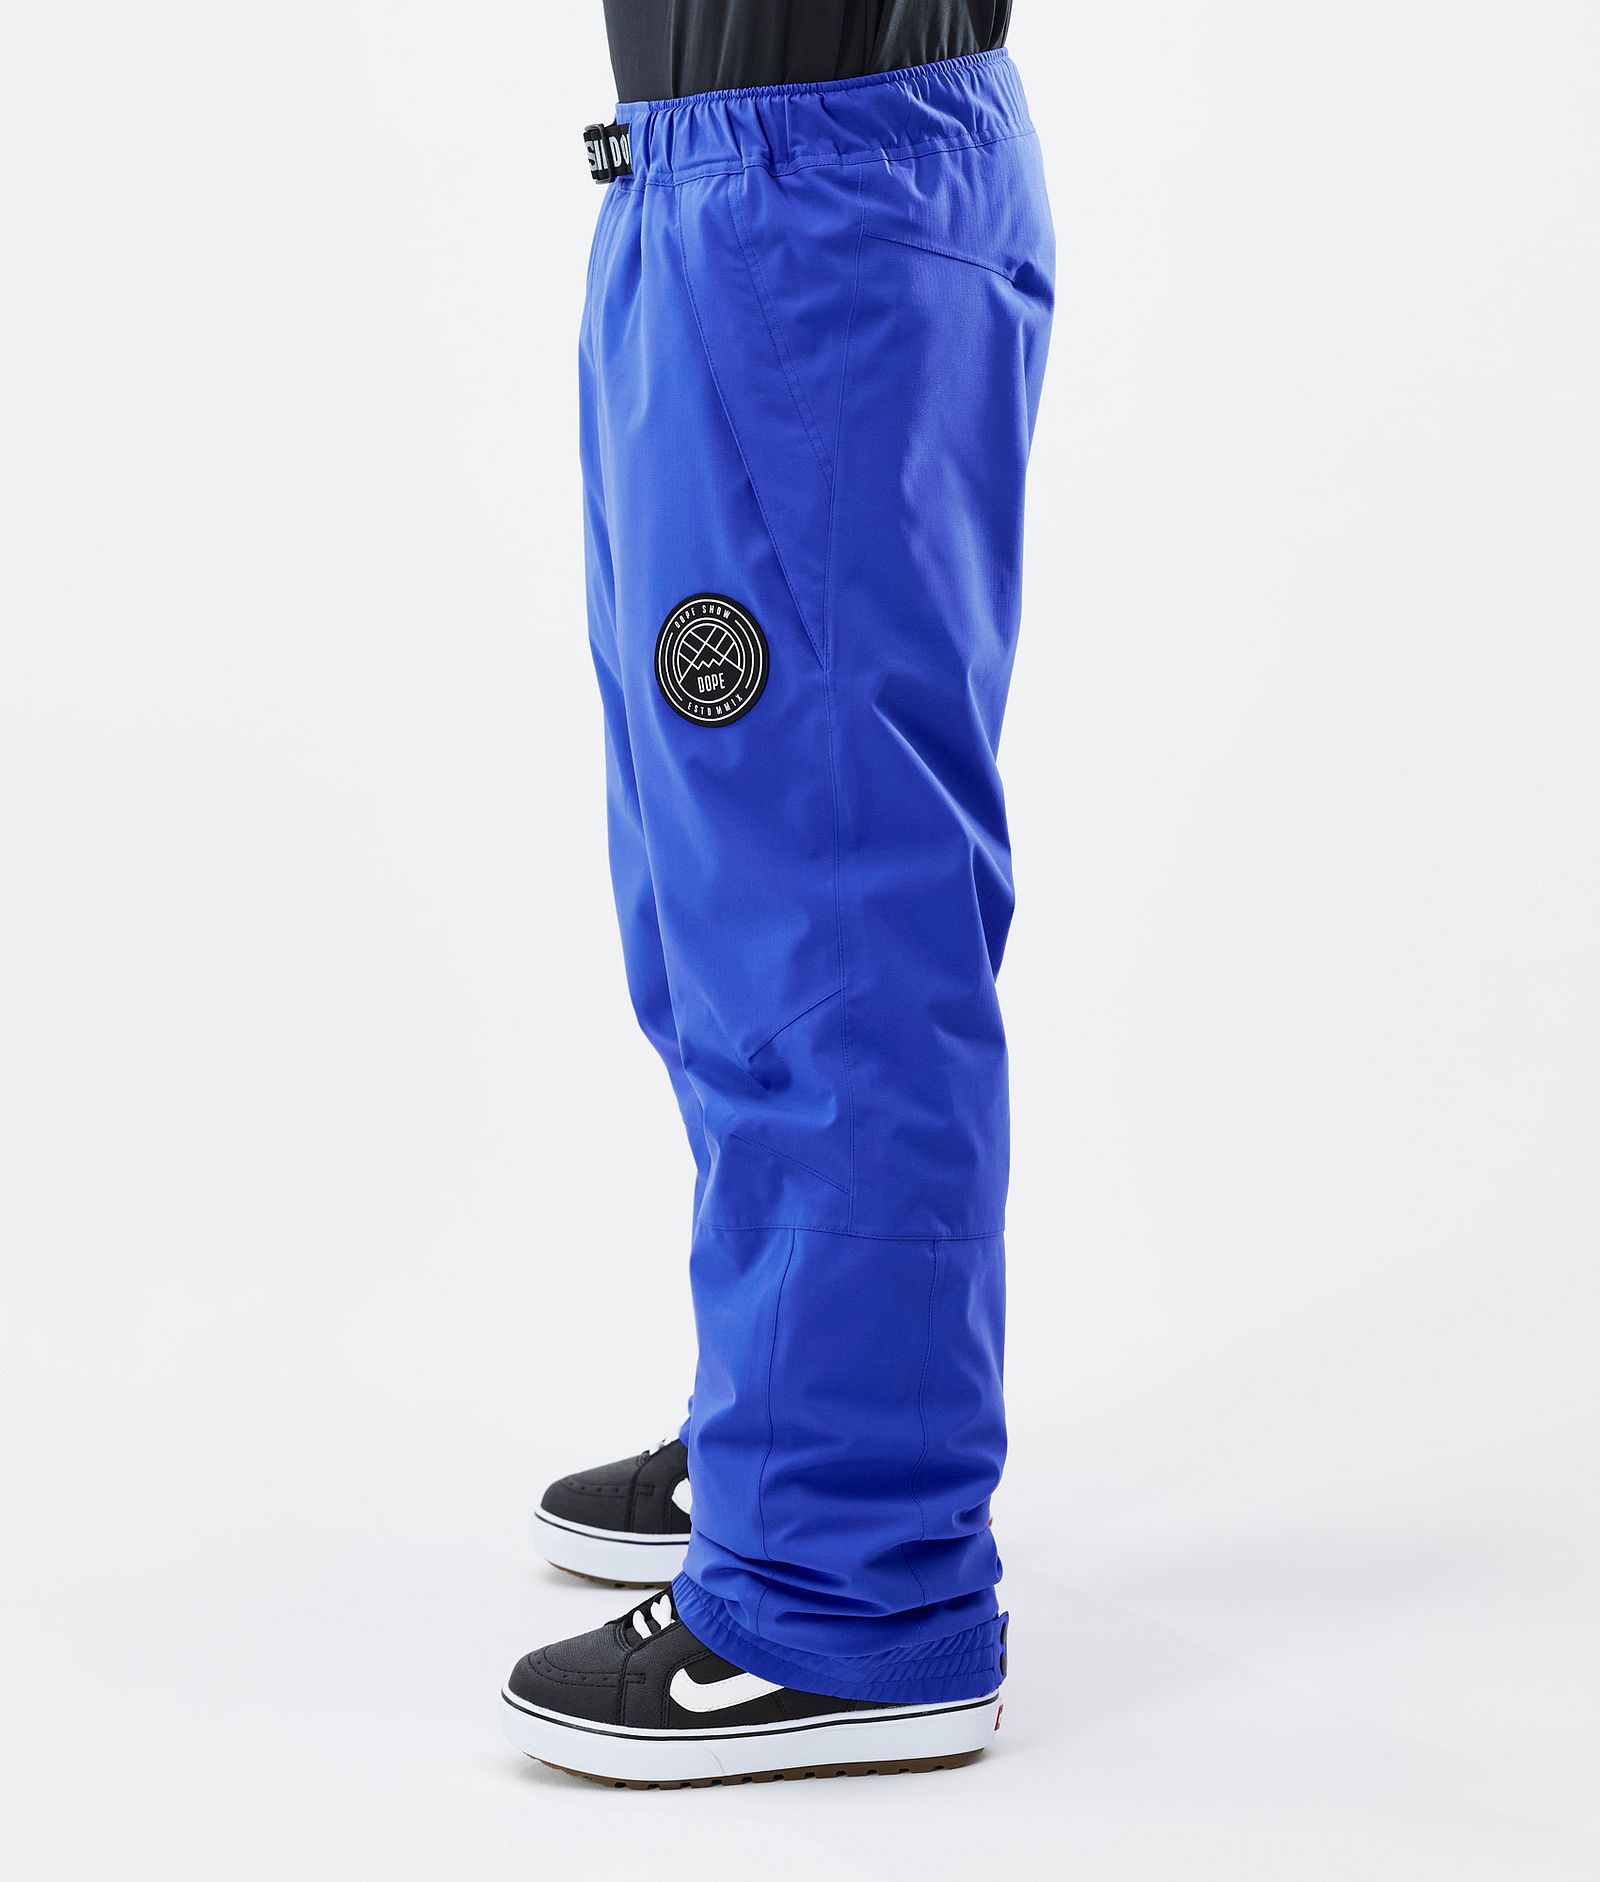 Dope Blizzard Pantaloni Snowboard Uomo Cobalt Blue, Immagine 3 di 5